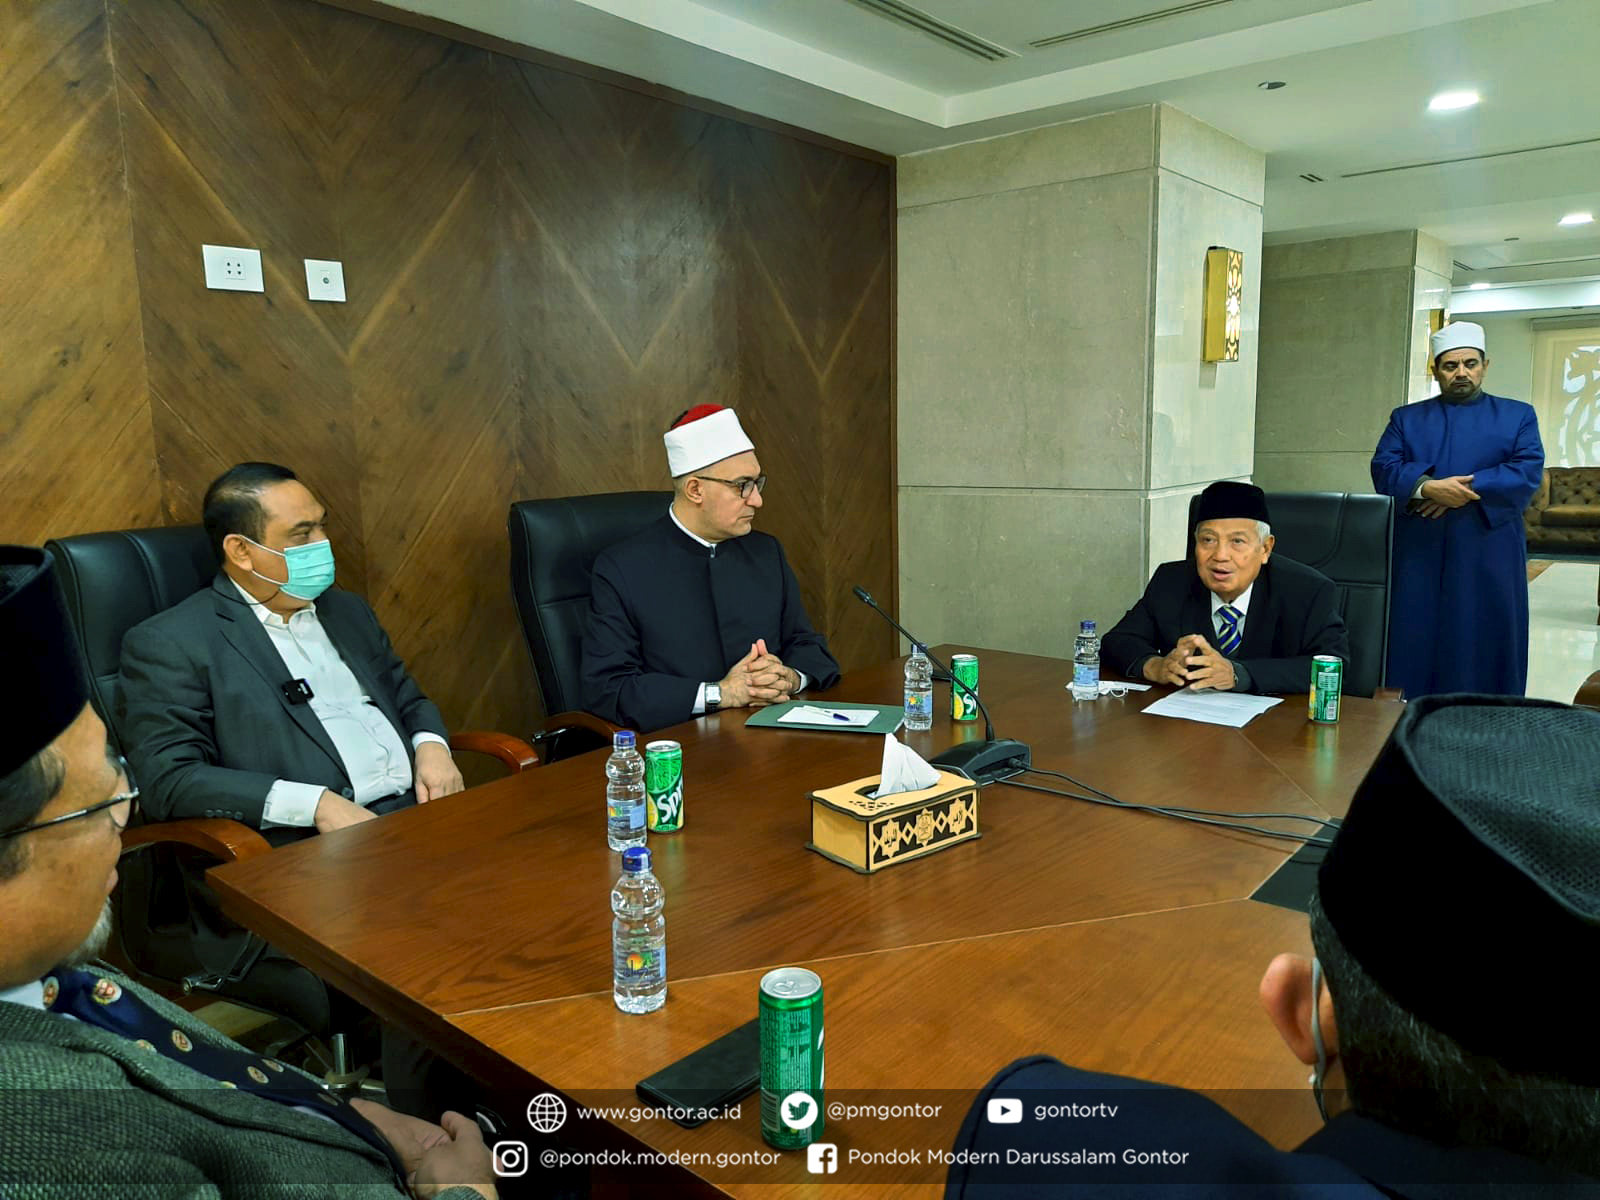 Perkuat Sistem Muadalah, Pimpinan PMDG Temui Sekjen Majma’ al-Buhuts al-Islamiyyah Prof. Dr. Nazhir ‘Iyad